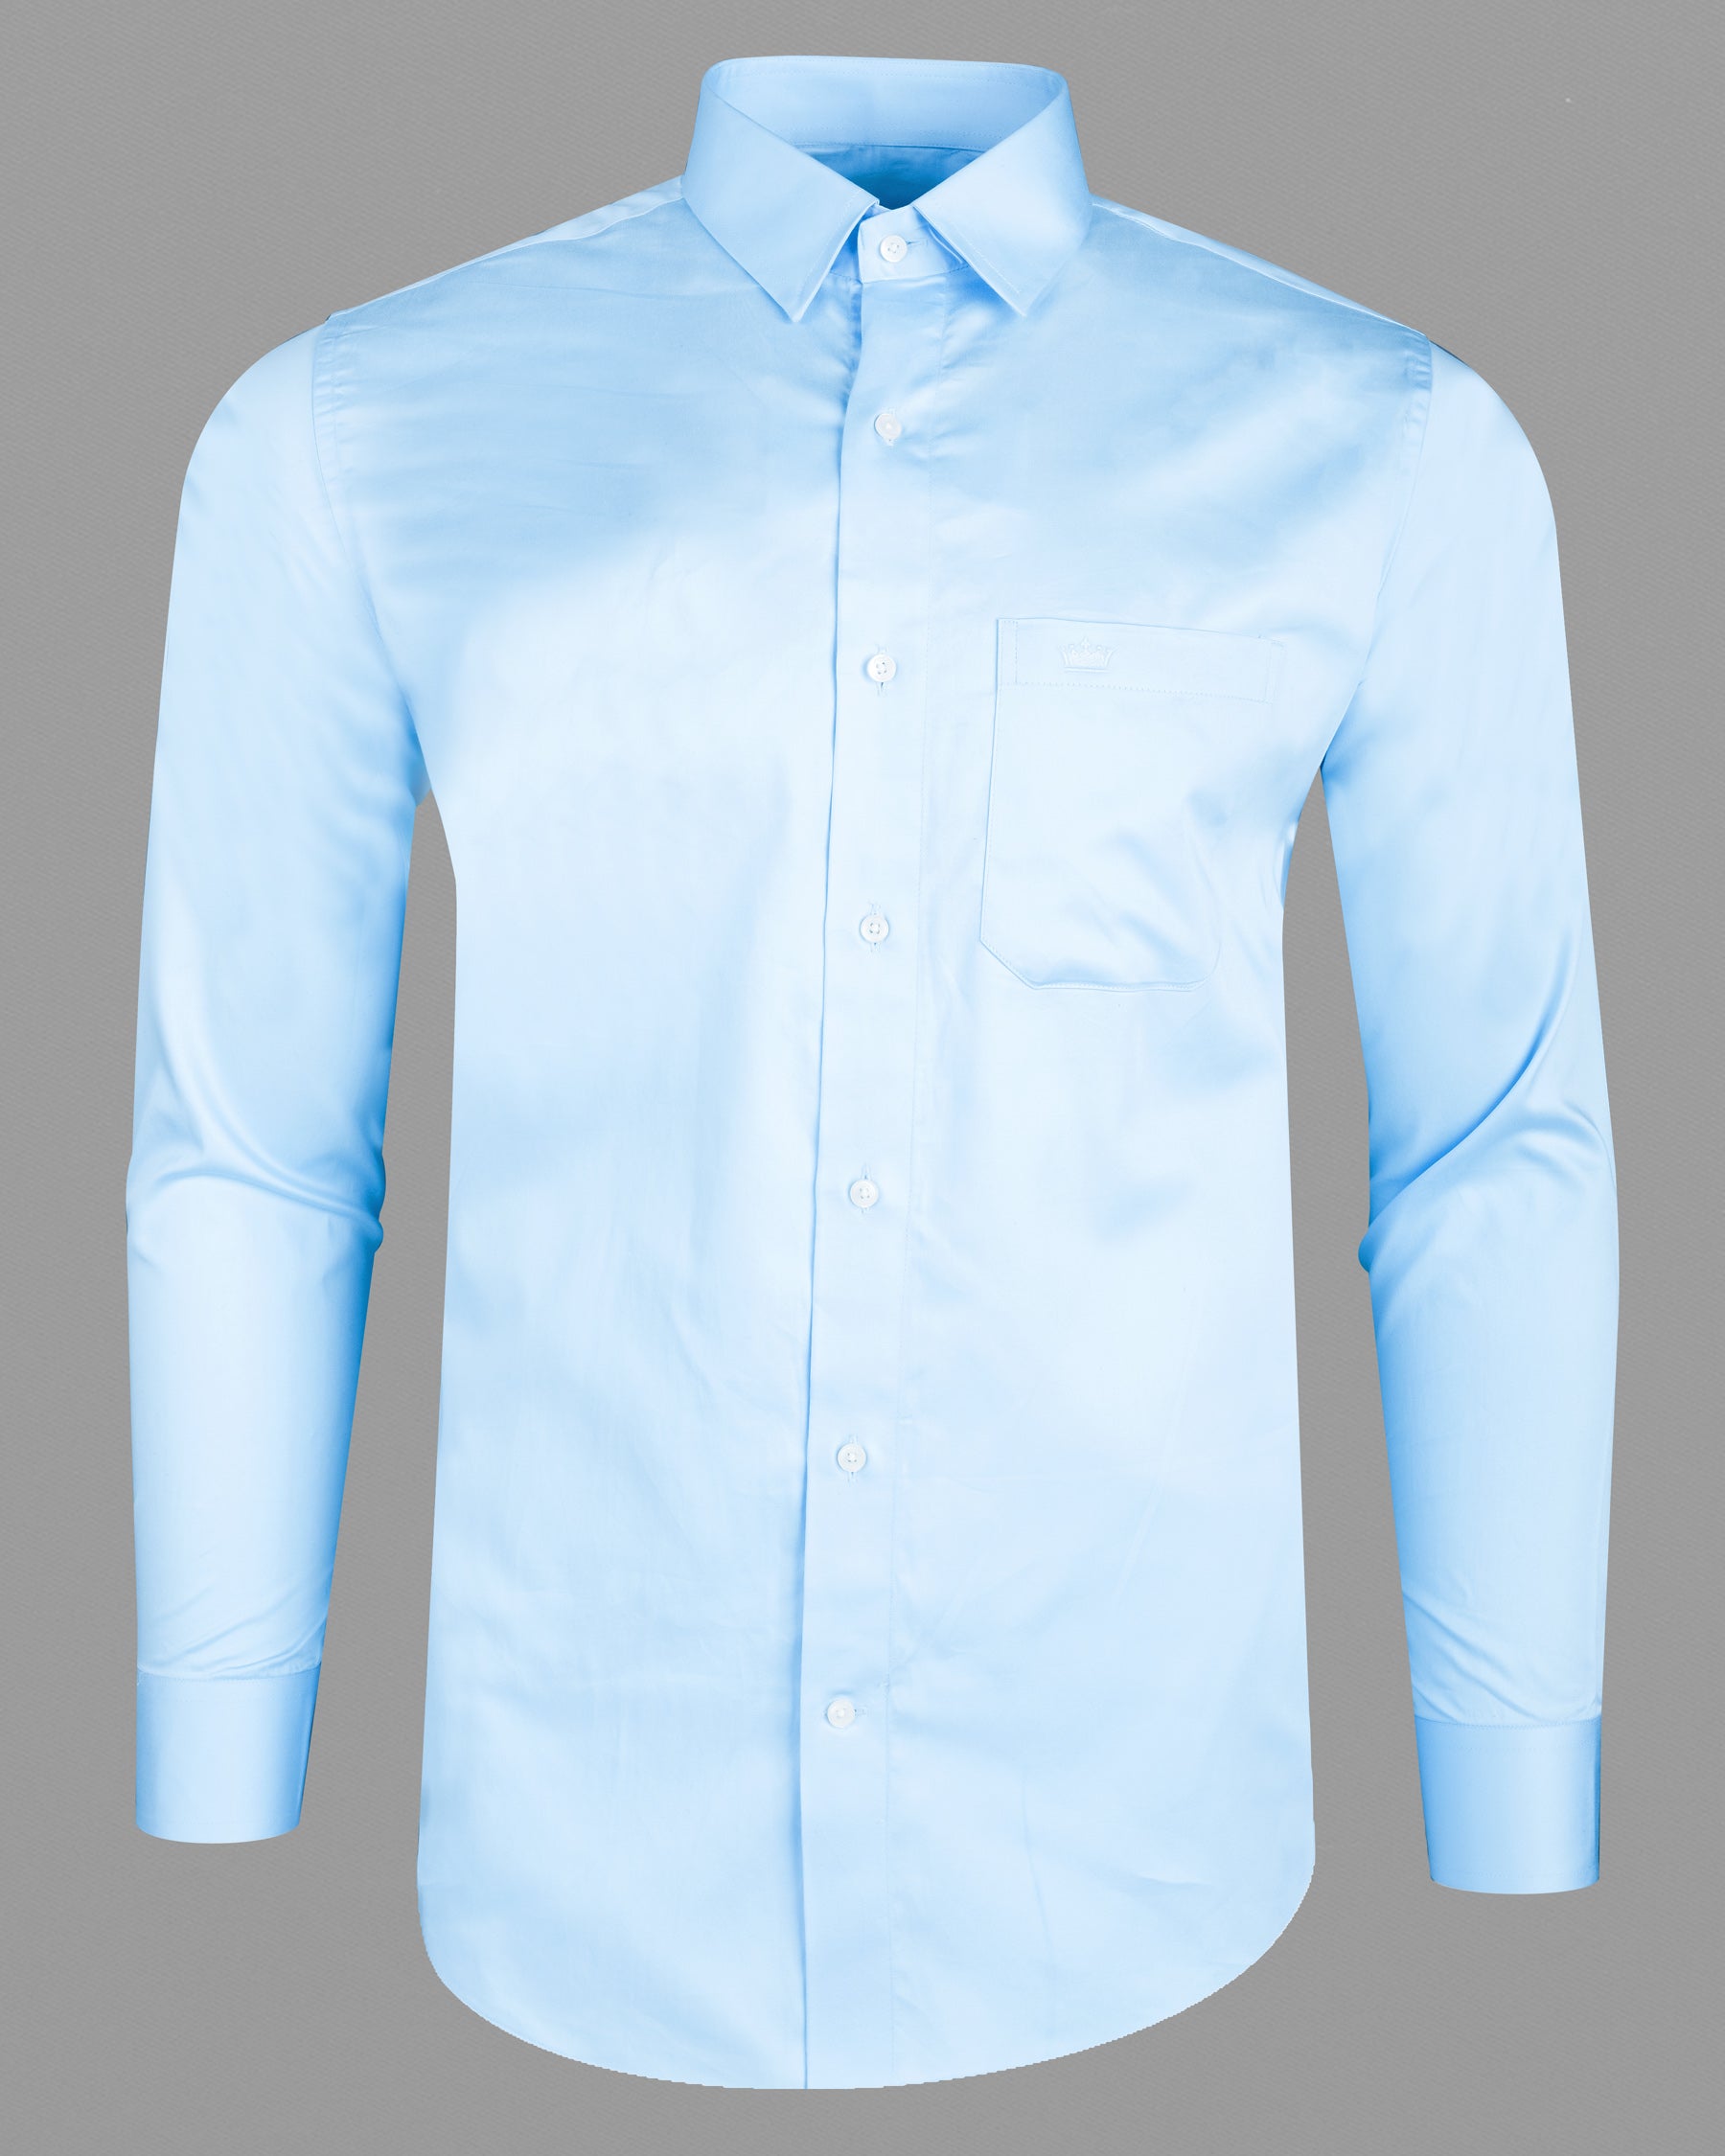 Mabel Blue Super Soft Premium Cotton Shirt